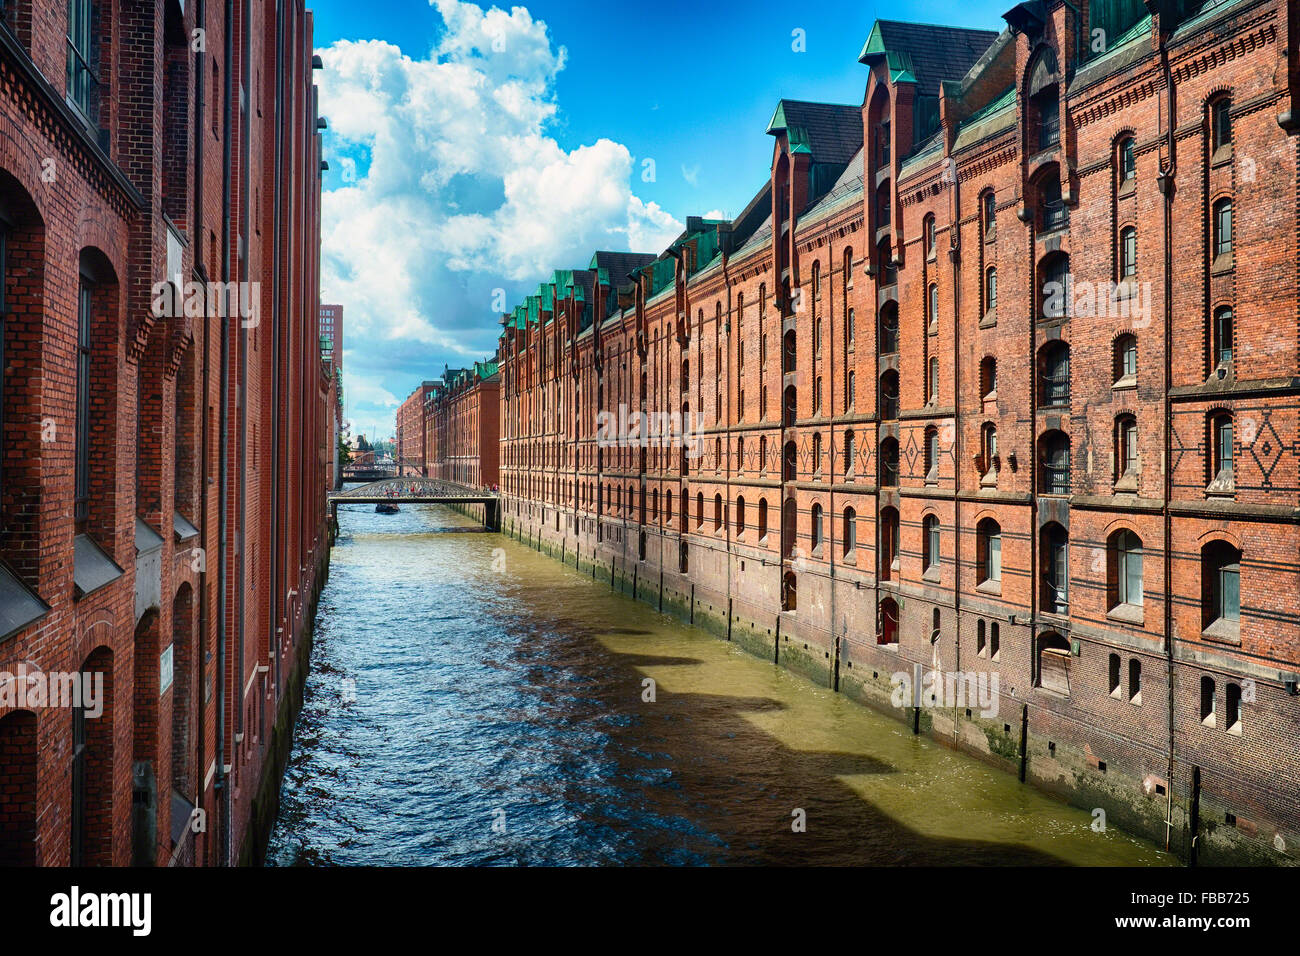 Vista de una hilera de almacenes de ladrillo rojo a lo largo de un canal, el Speicherstadt, Hamburgo, Alemania. Foto de stock